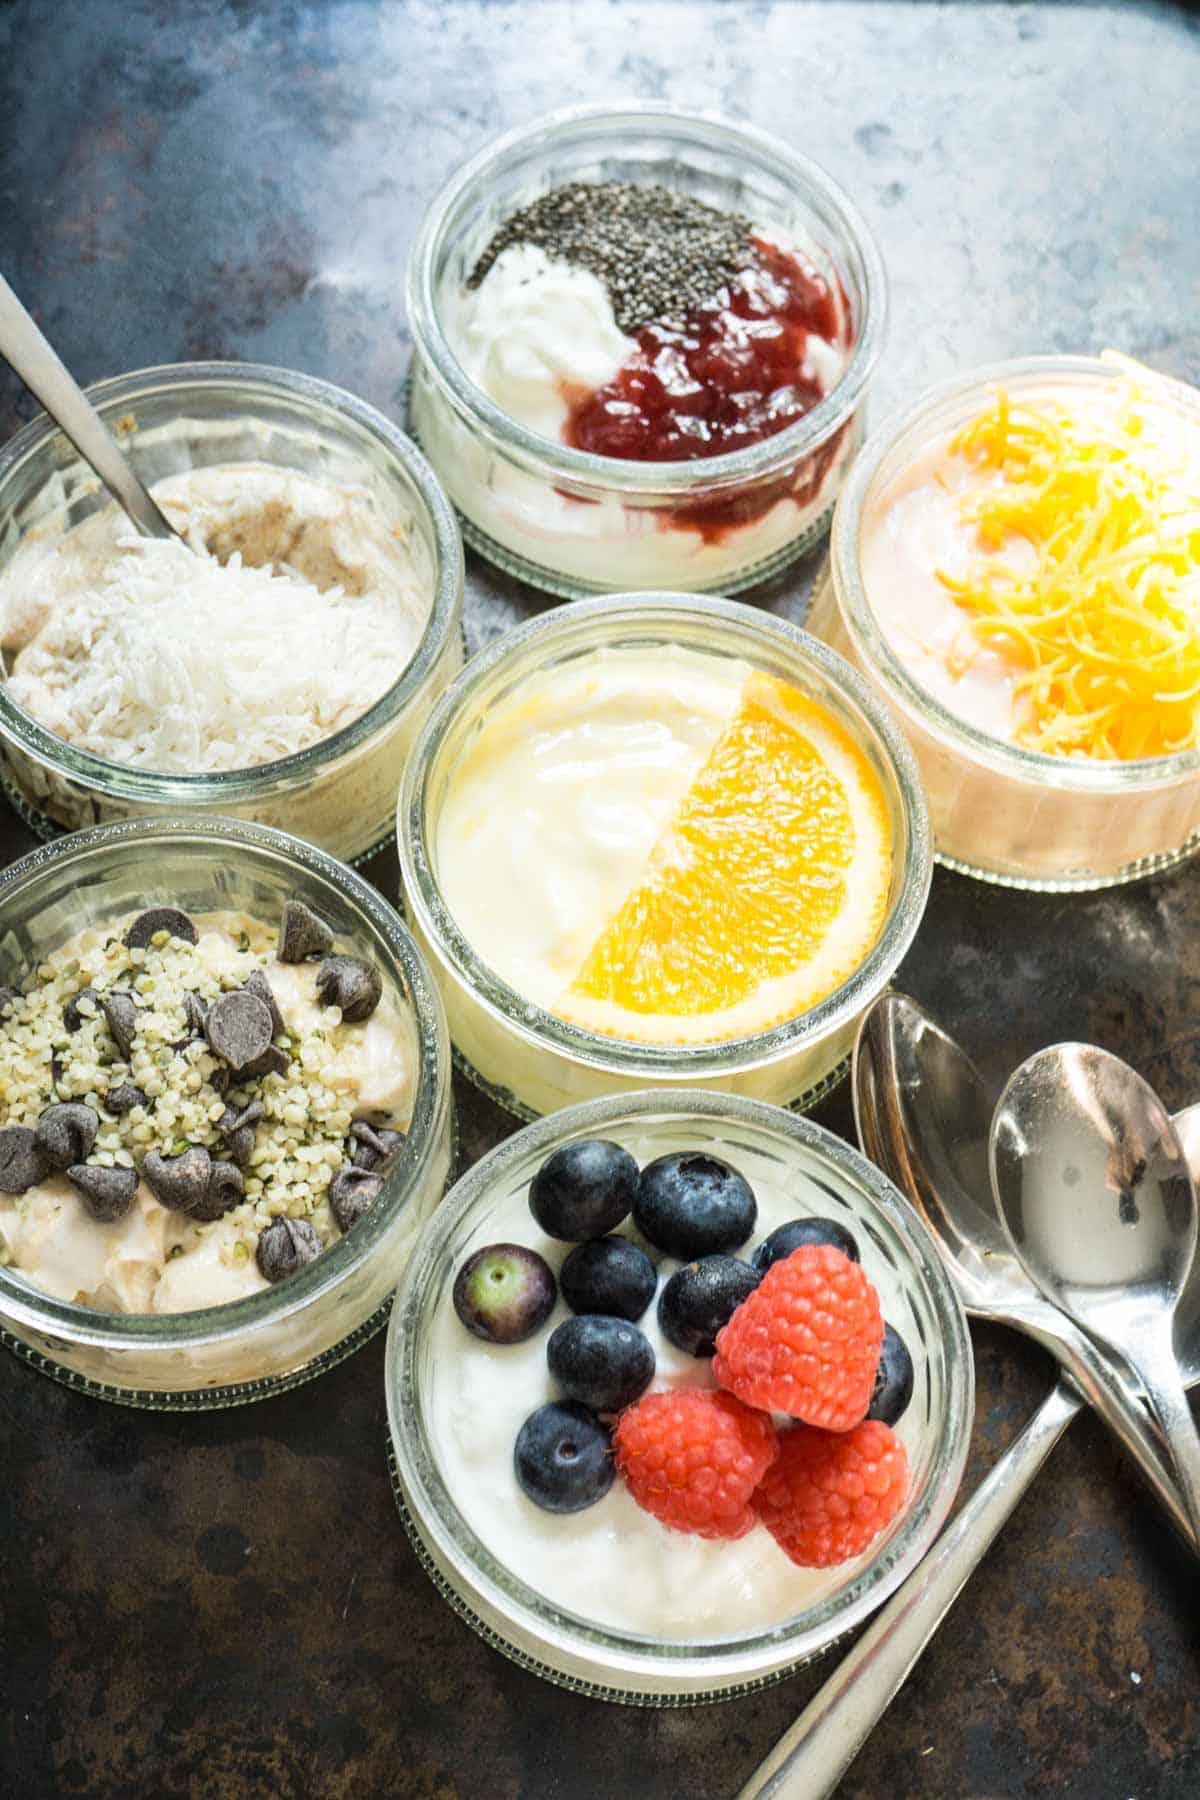 6 ways to flavour plain yogurt